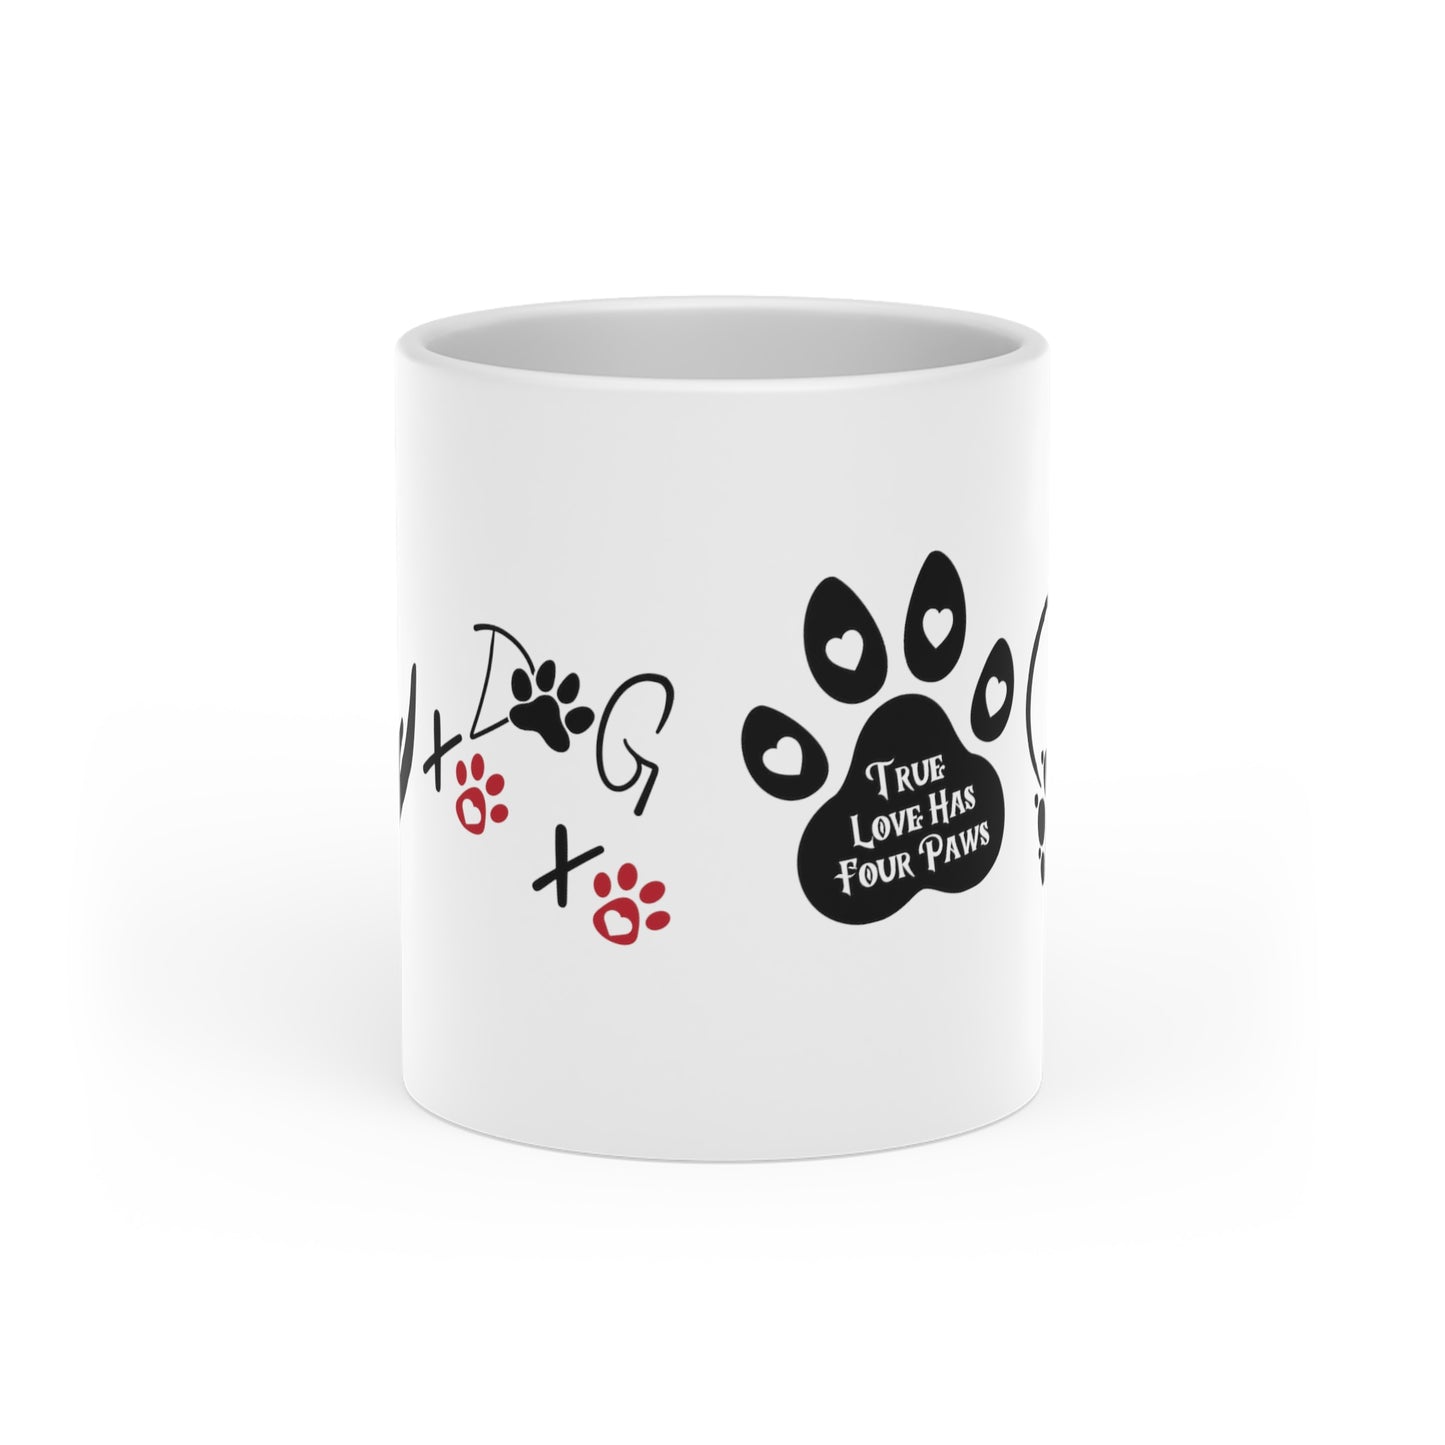 XOXO DOG Heart-Shaped Mug